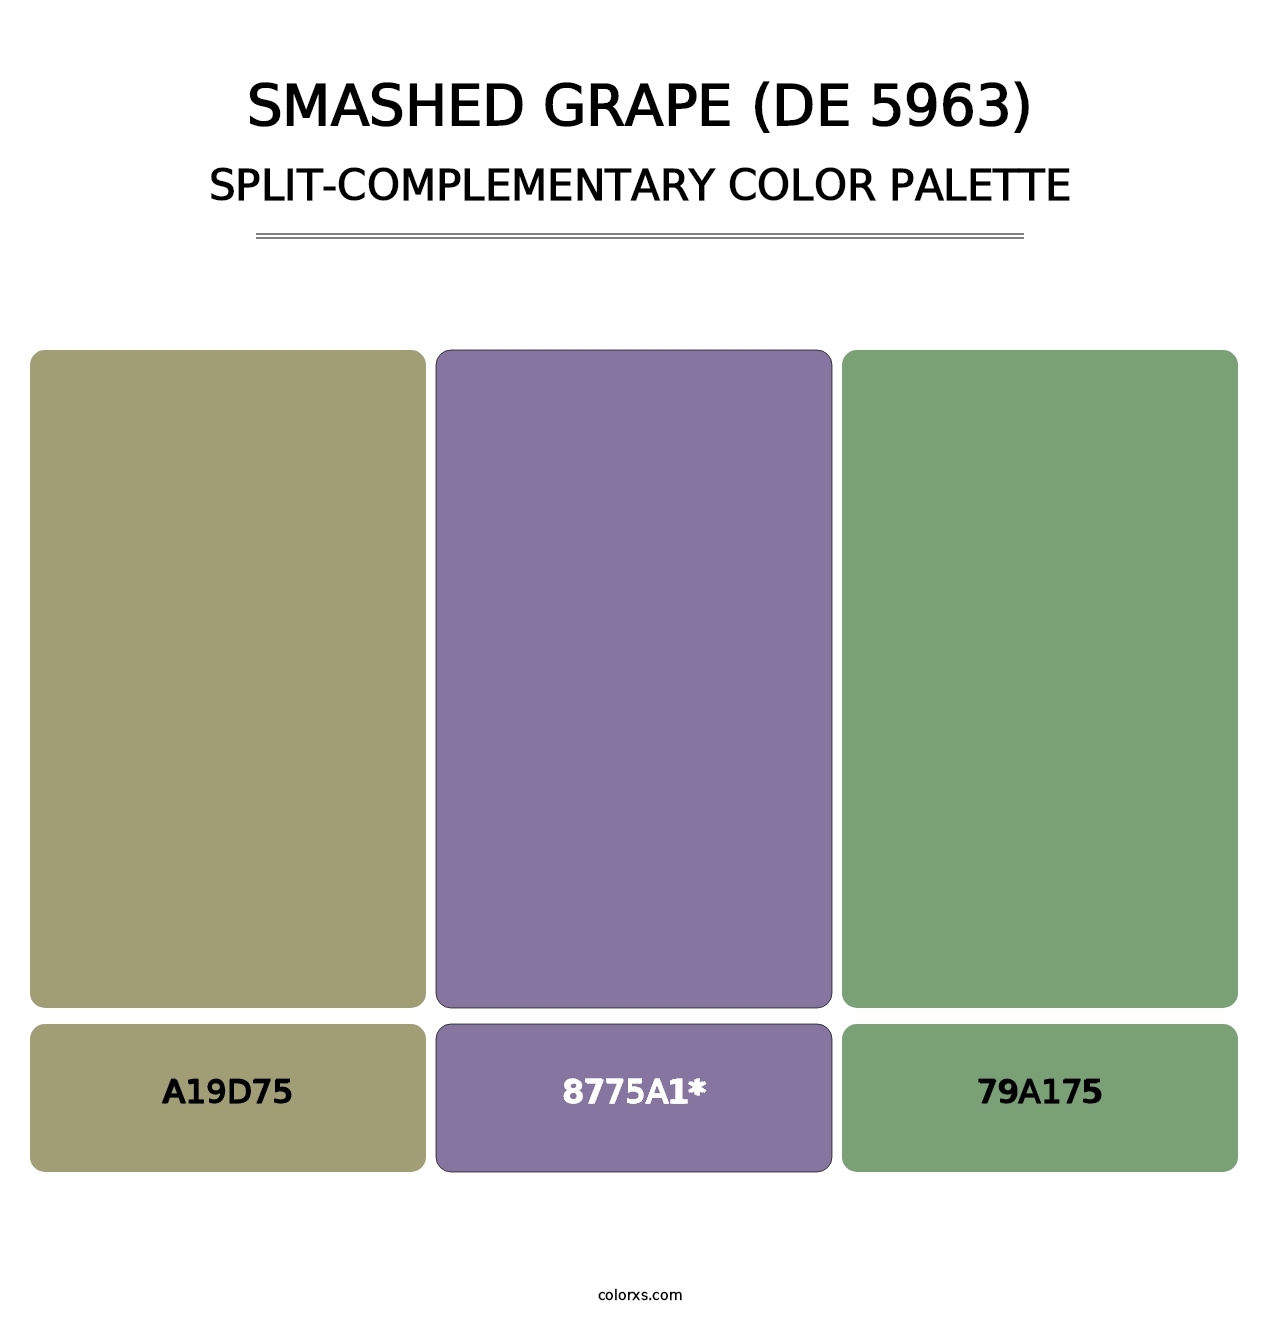 Smashed Grape (DE 5963) - Split-Complementary Color Palette